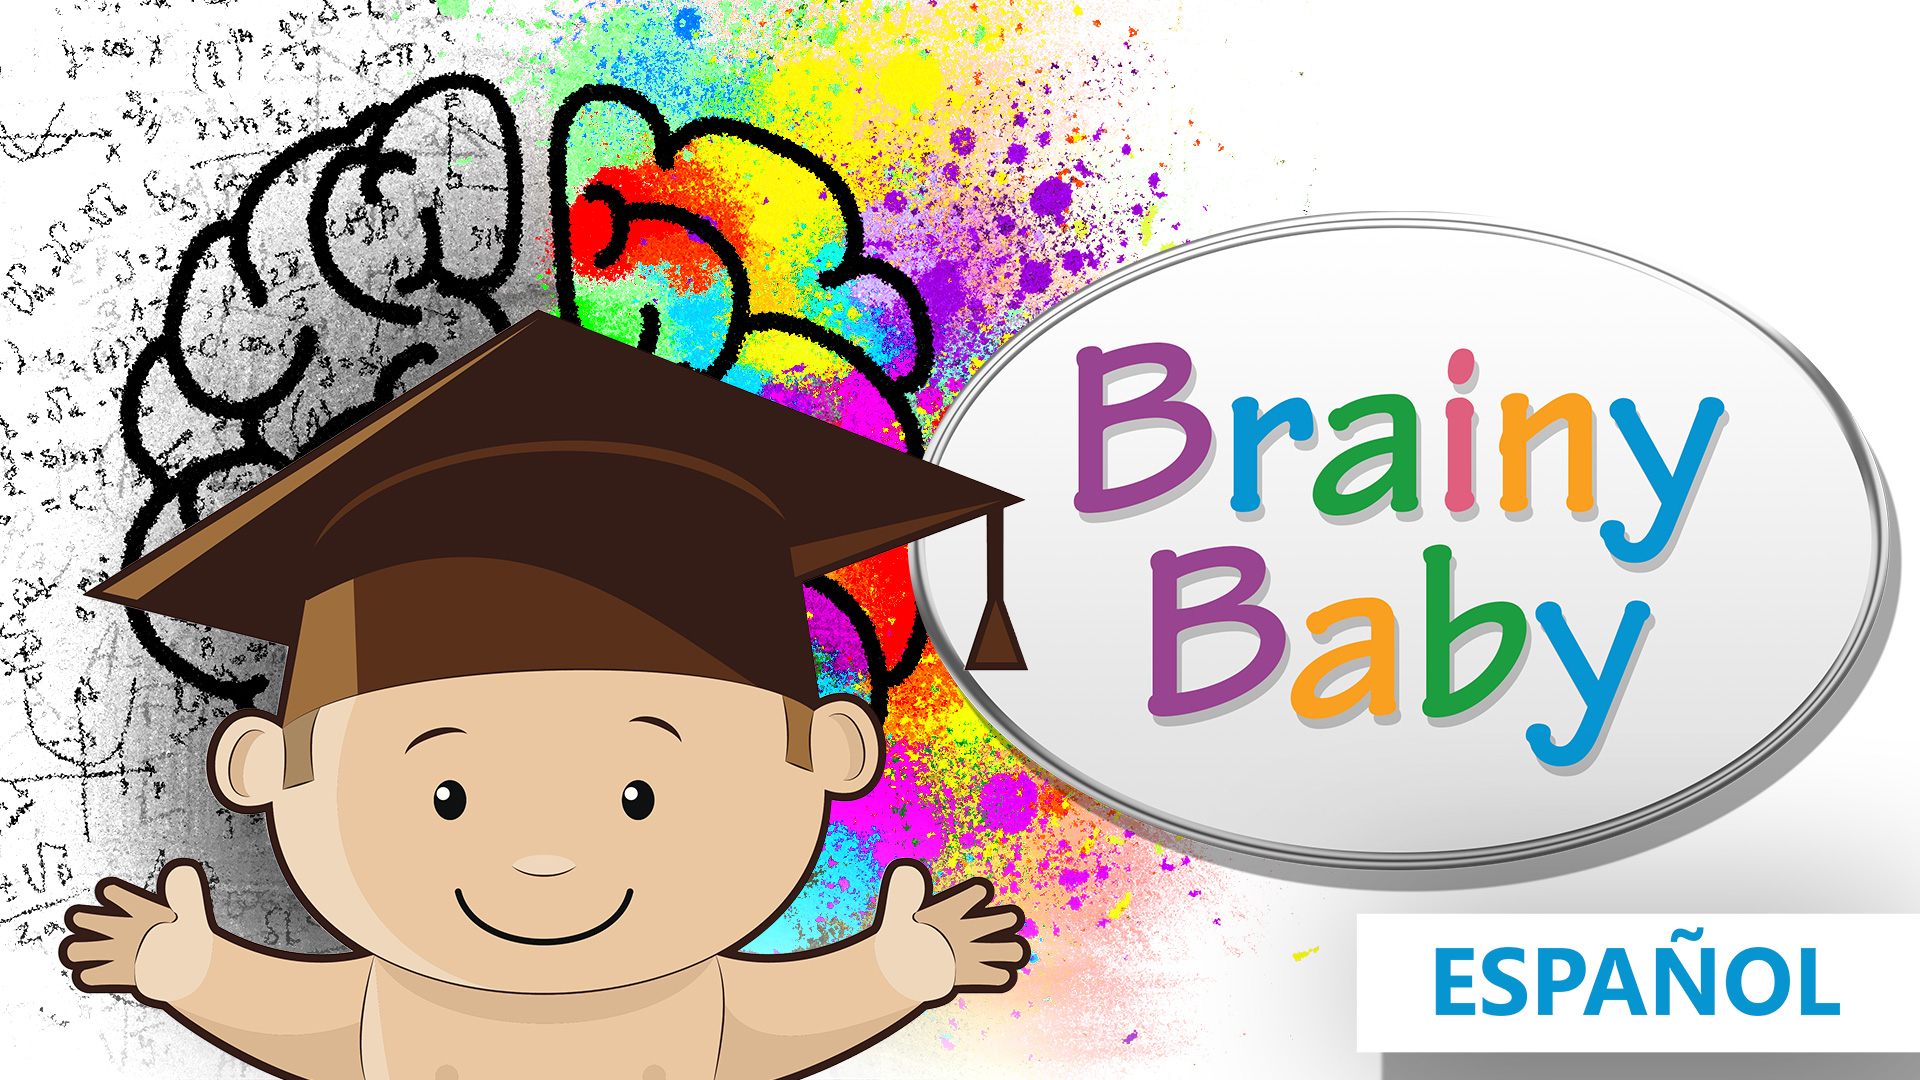  Brainy Baby ¿Como se dice? Aprendiendo palabras en